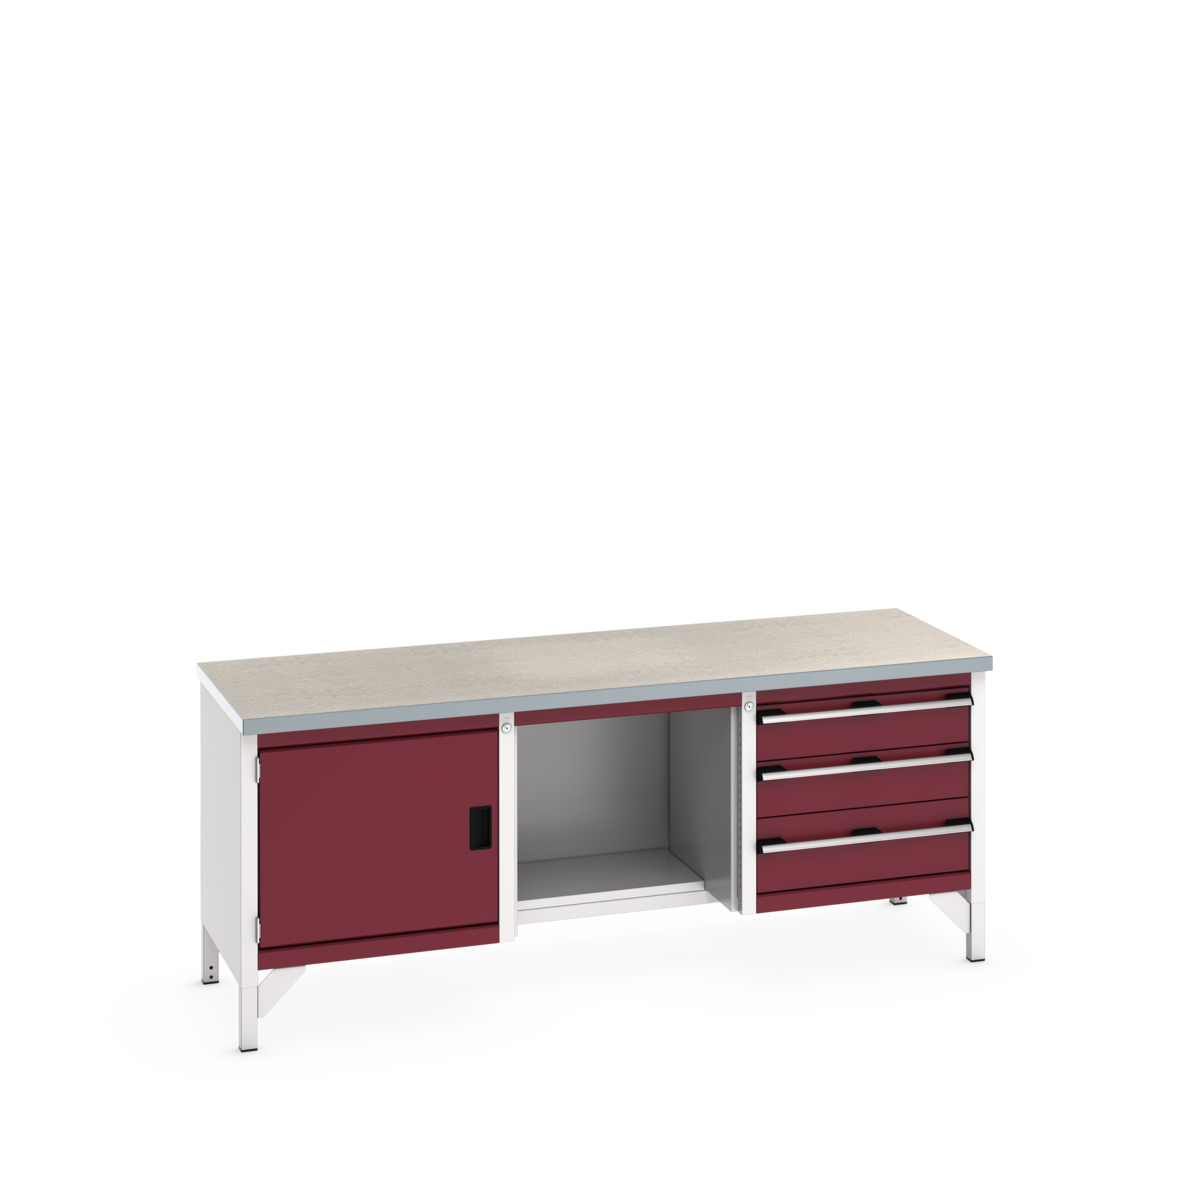 41002072.24V - cubio storage bench (lino)